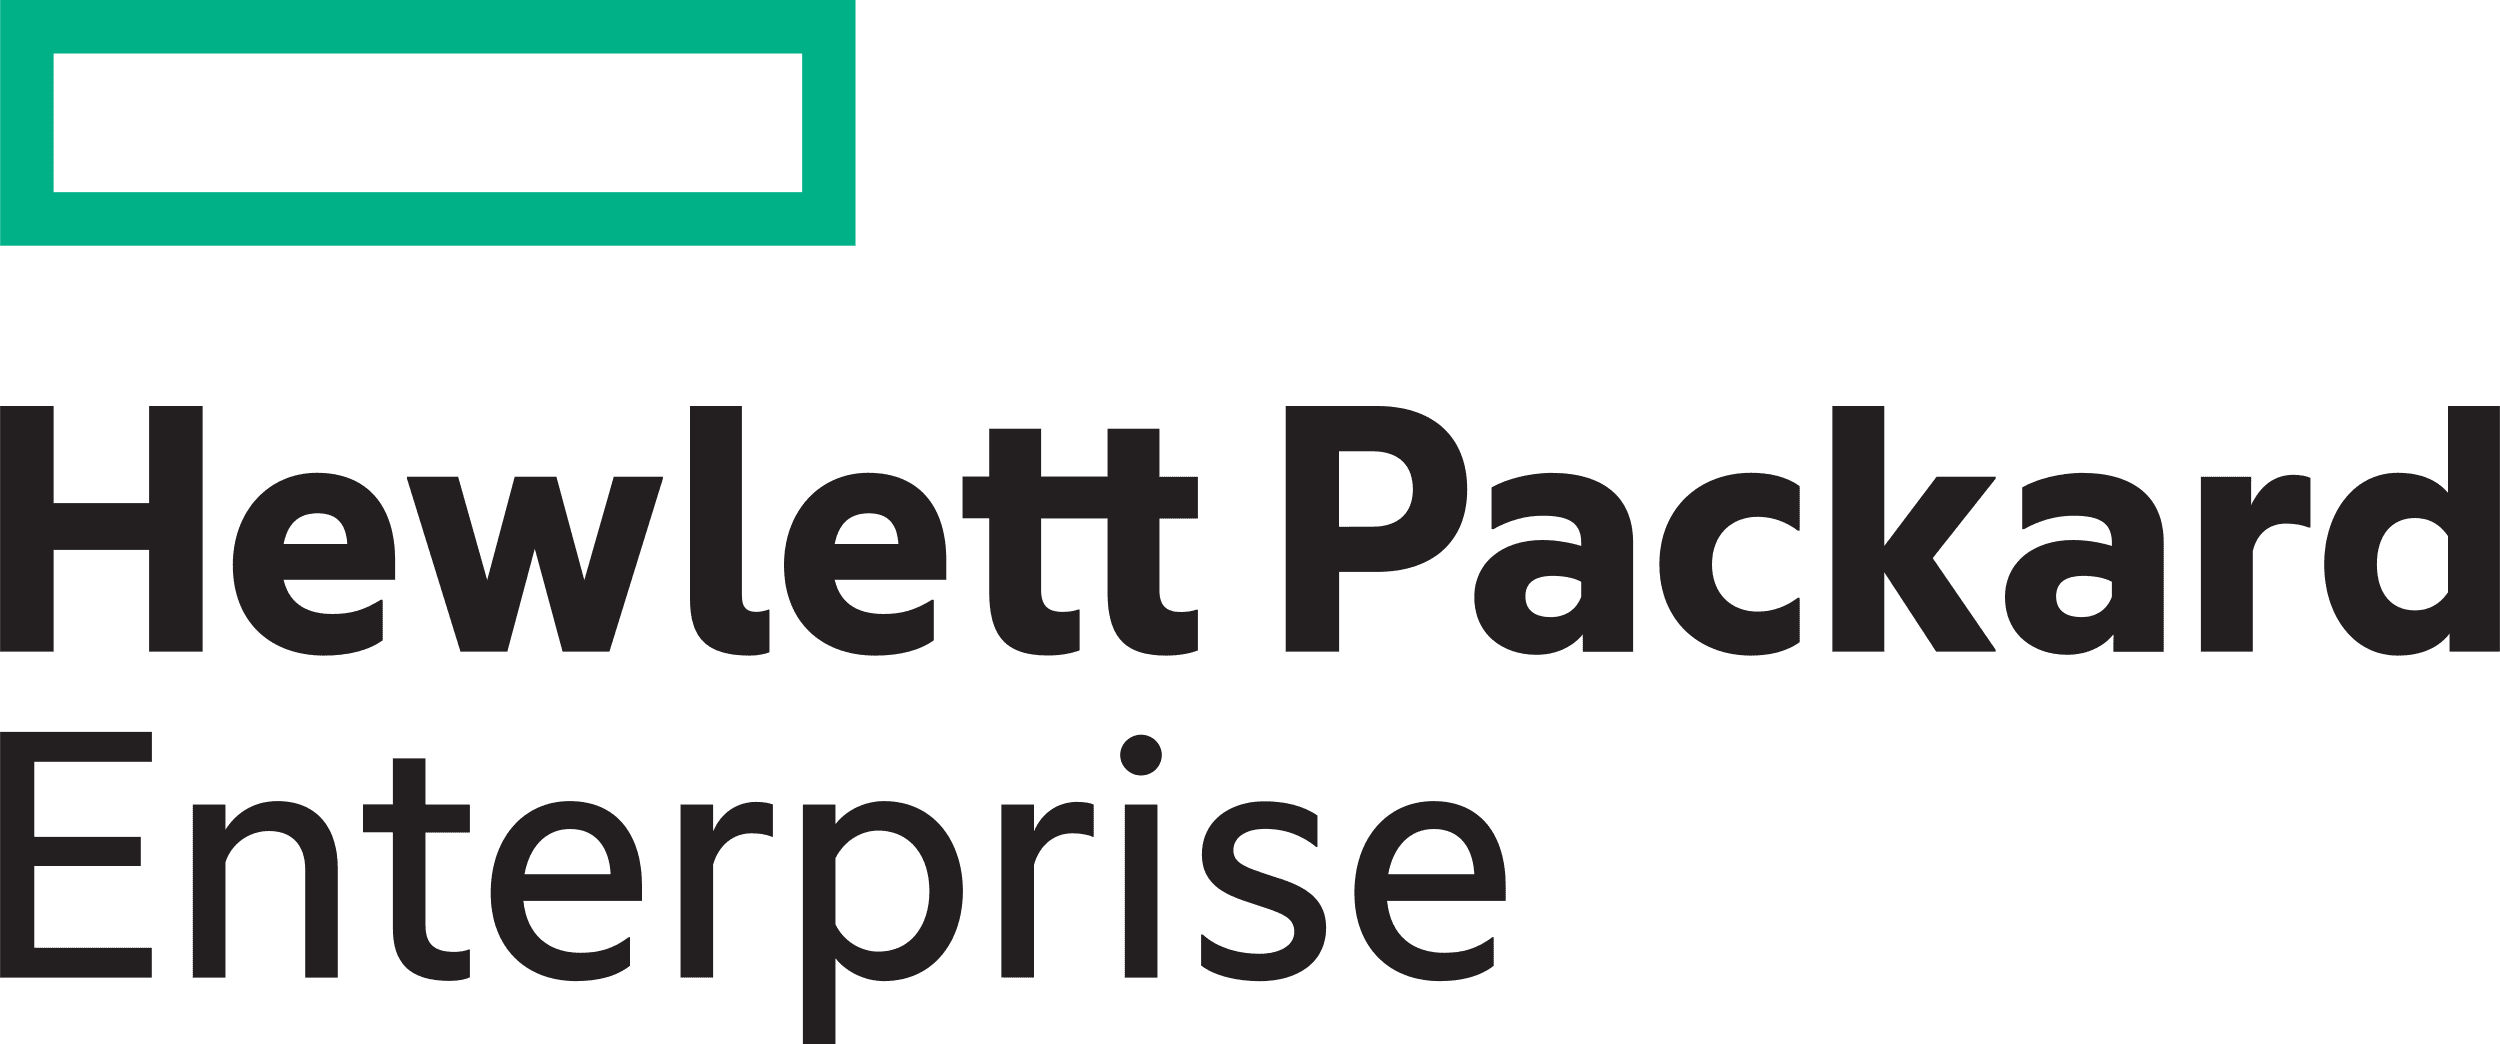 Hewlett Packard Enterprise</p>
<p>